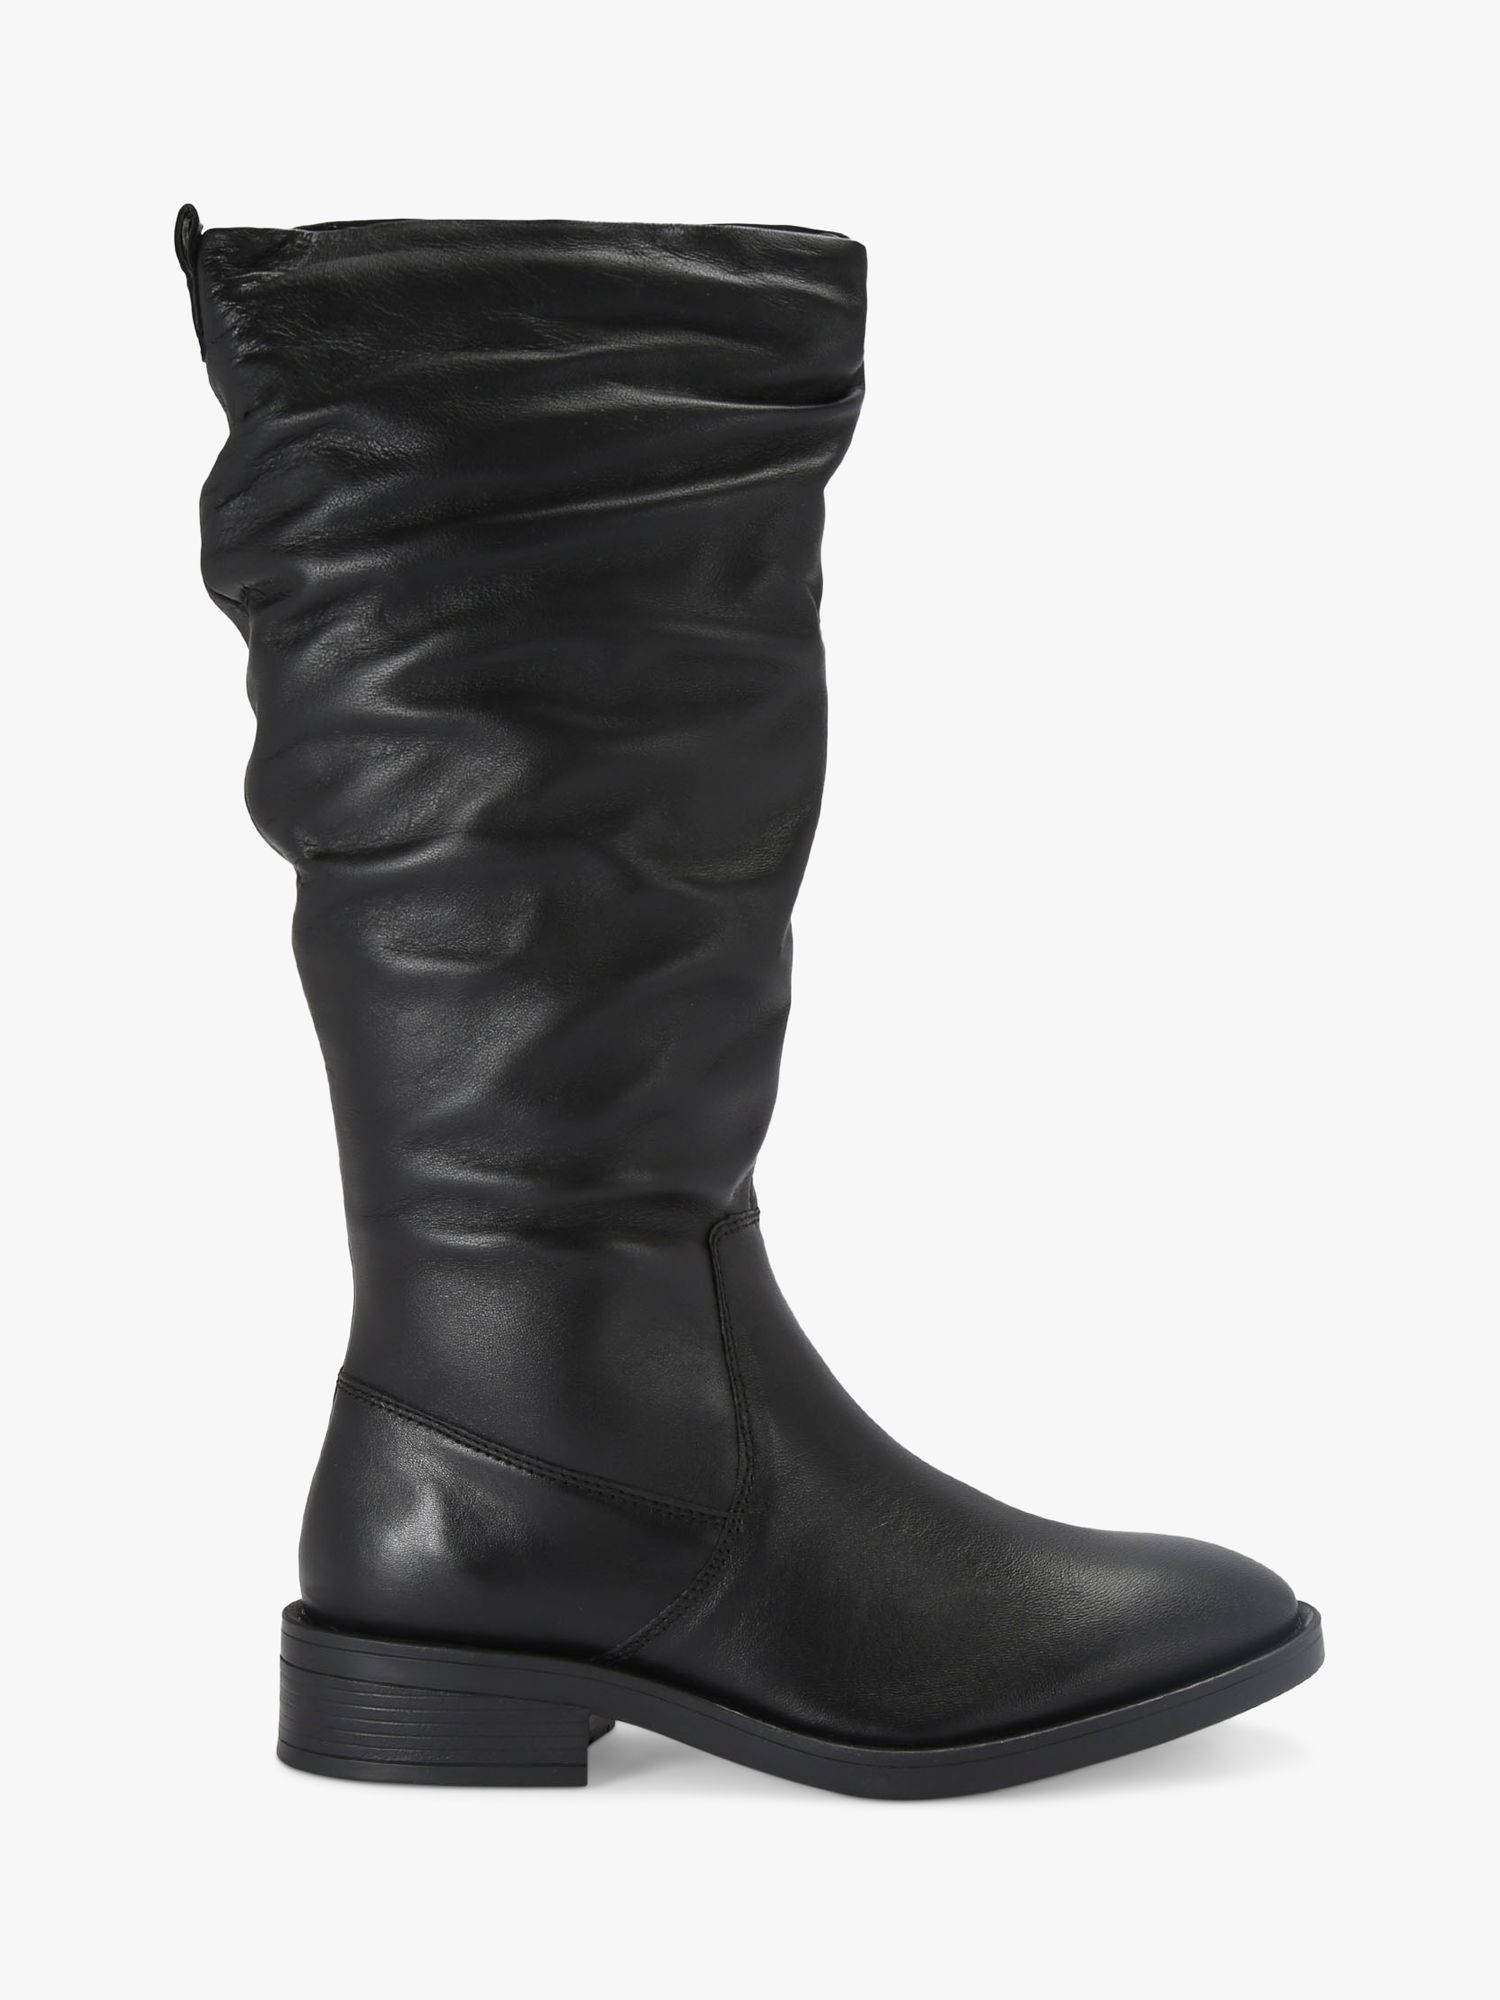 Carvela Parlour Leather Calf Boots, Black, 6